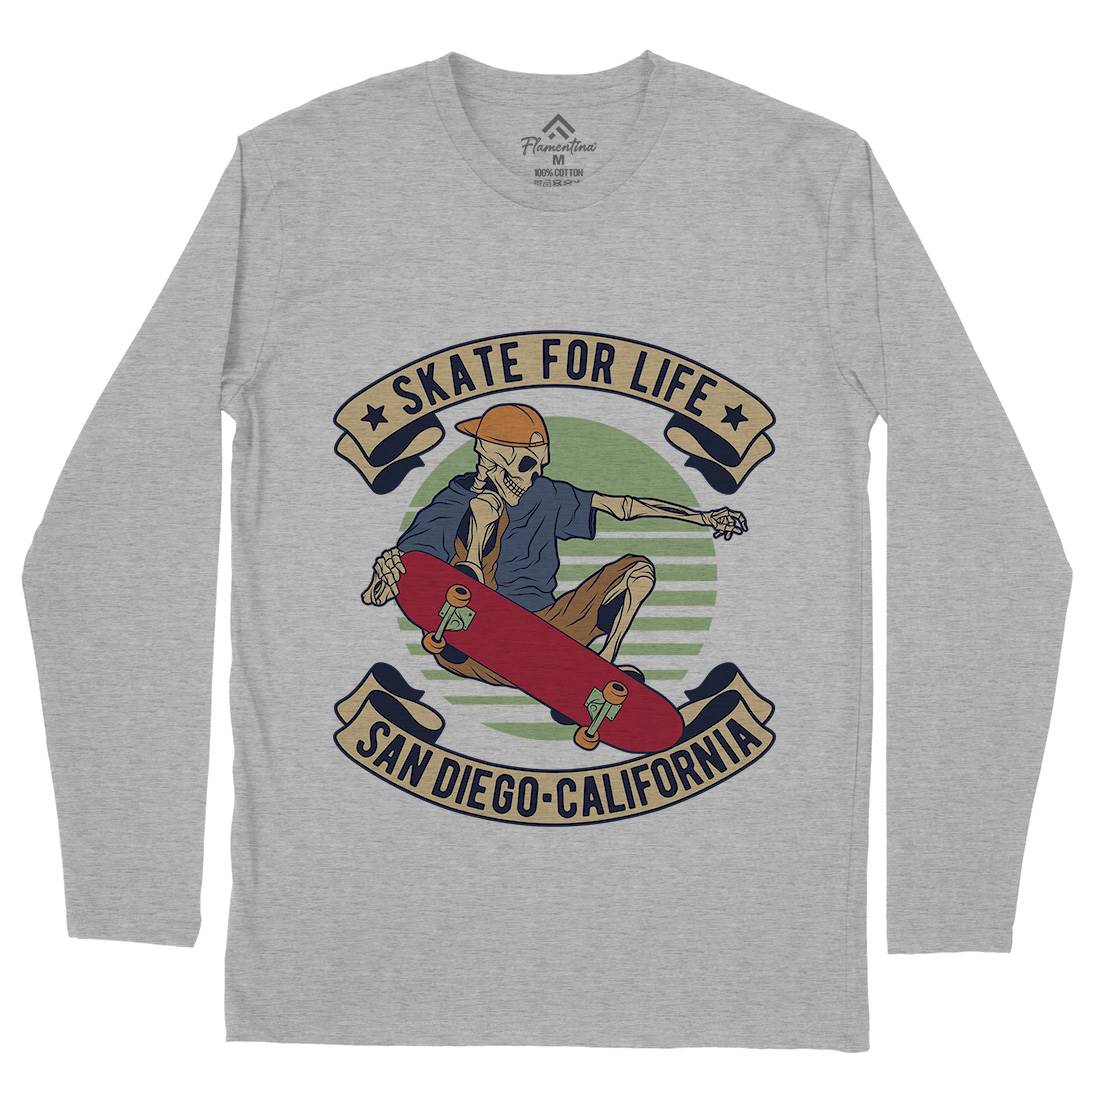 For Life Mens Long Sleeve T-Shirt Skate D970